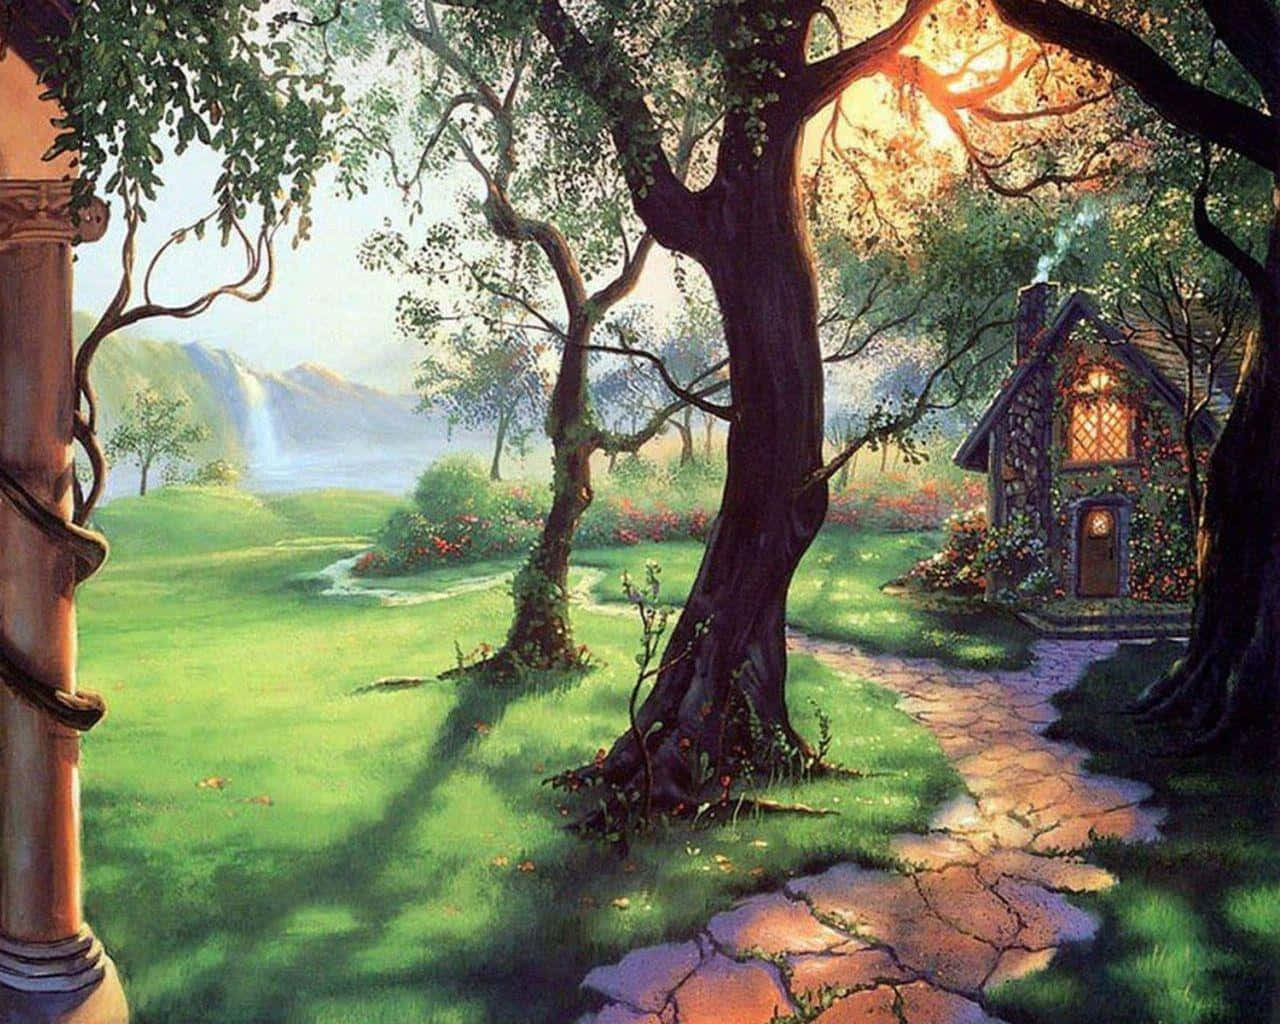 Enchanted Garden Magical Scenery Wallpaper